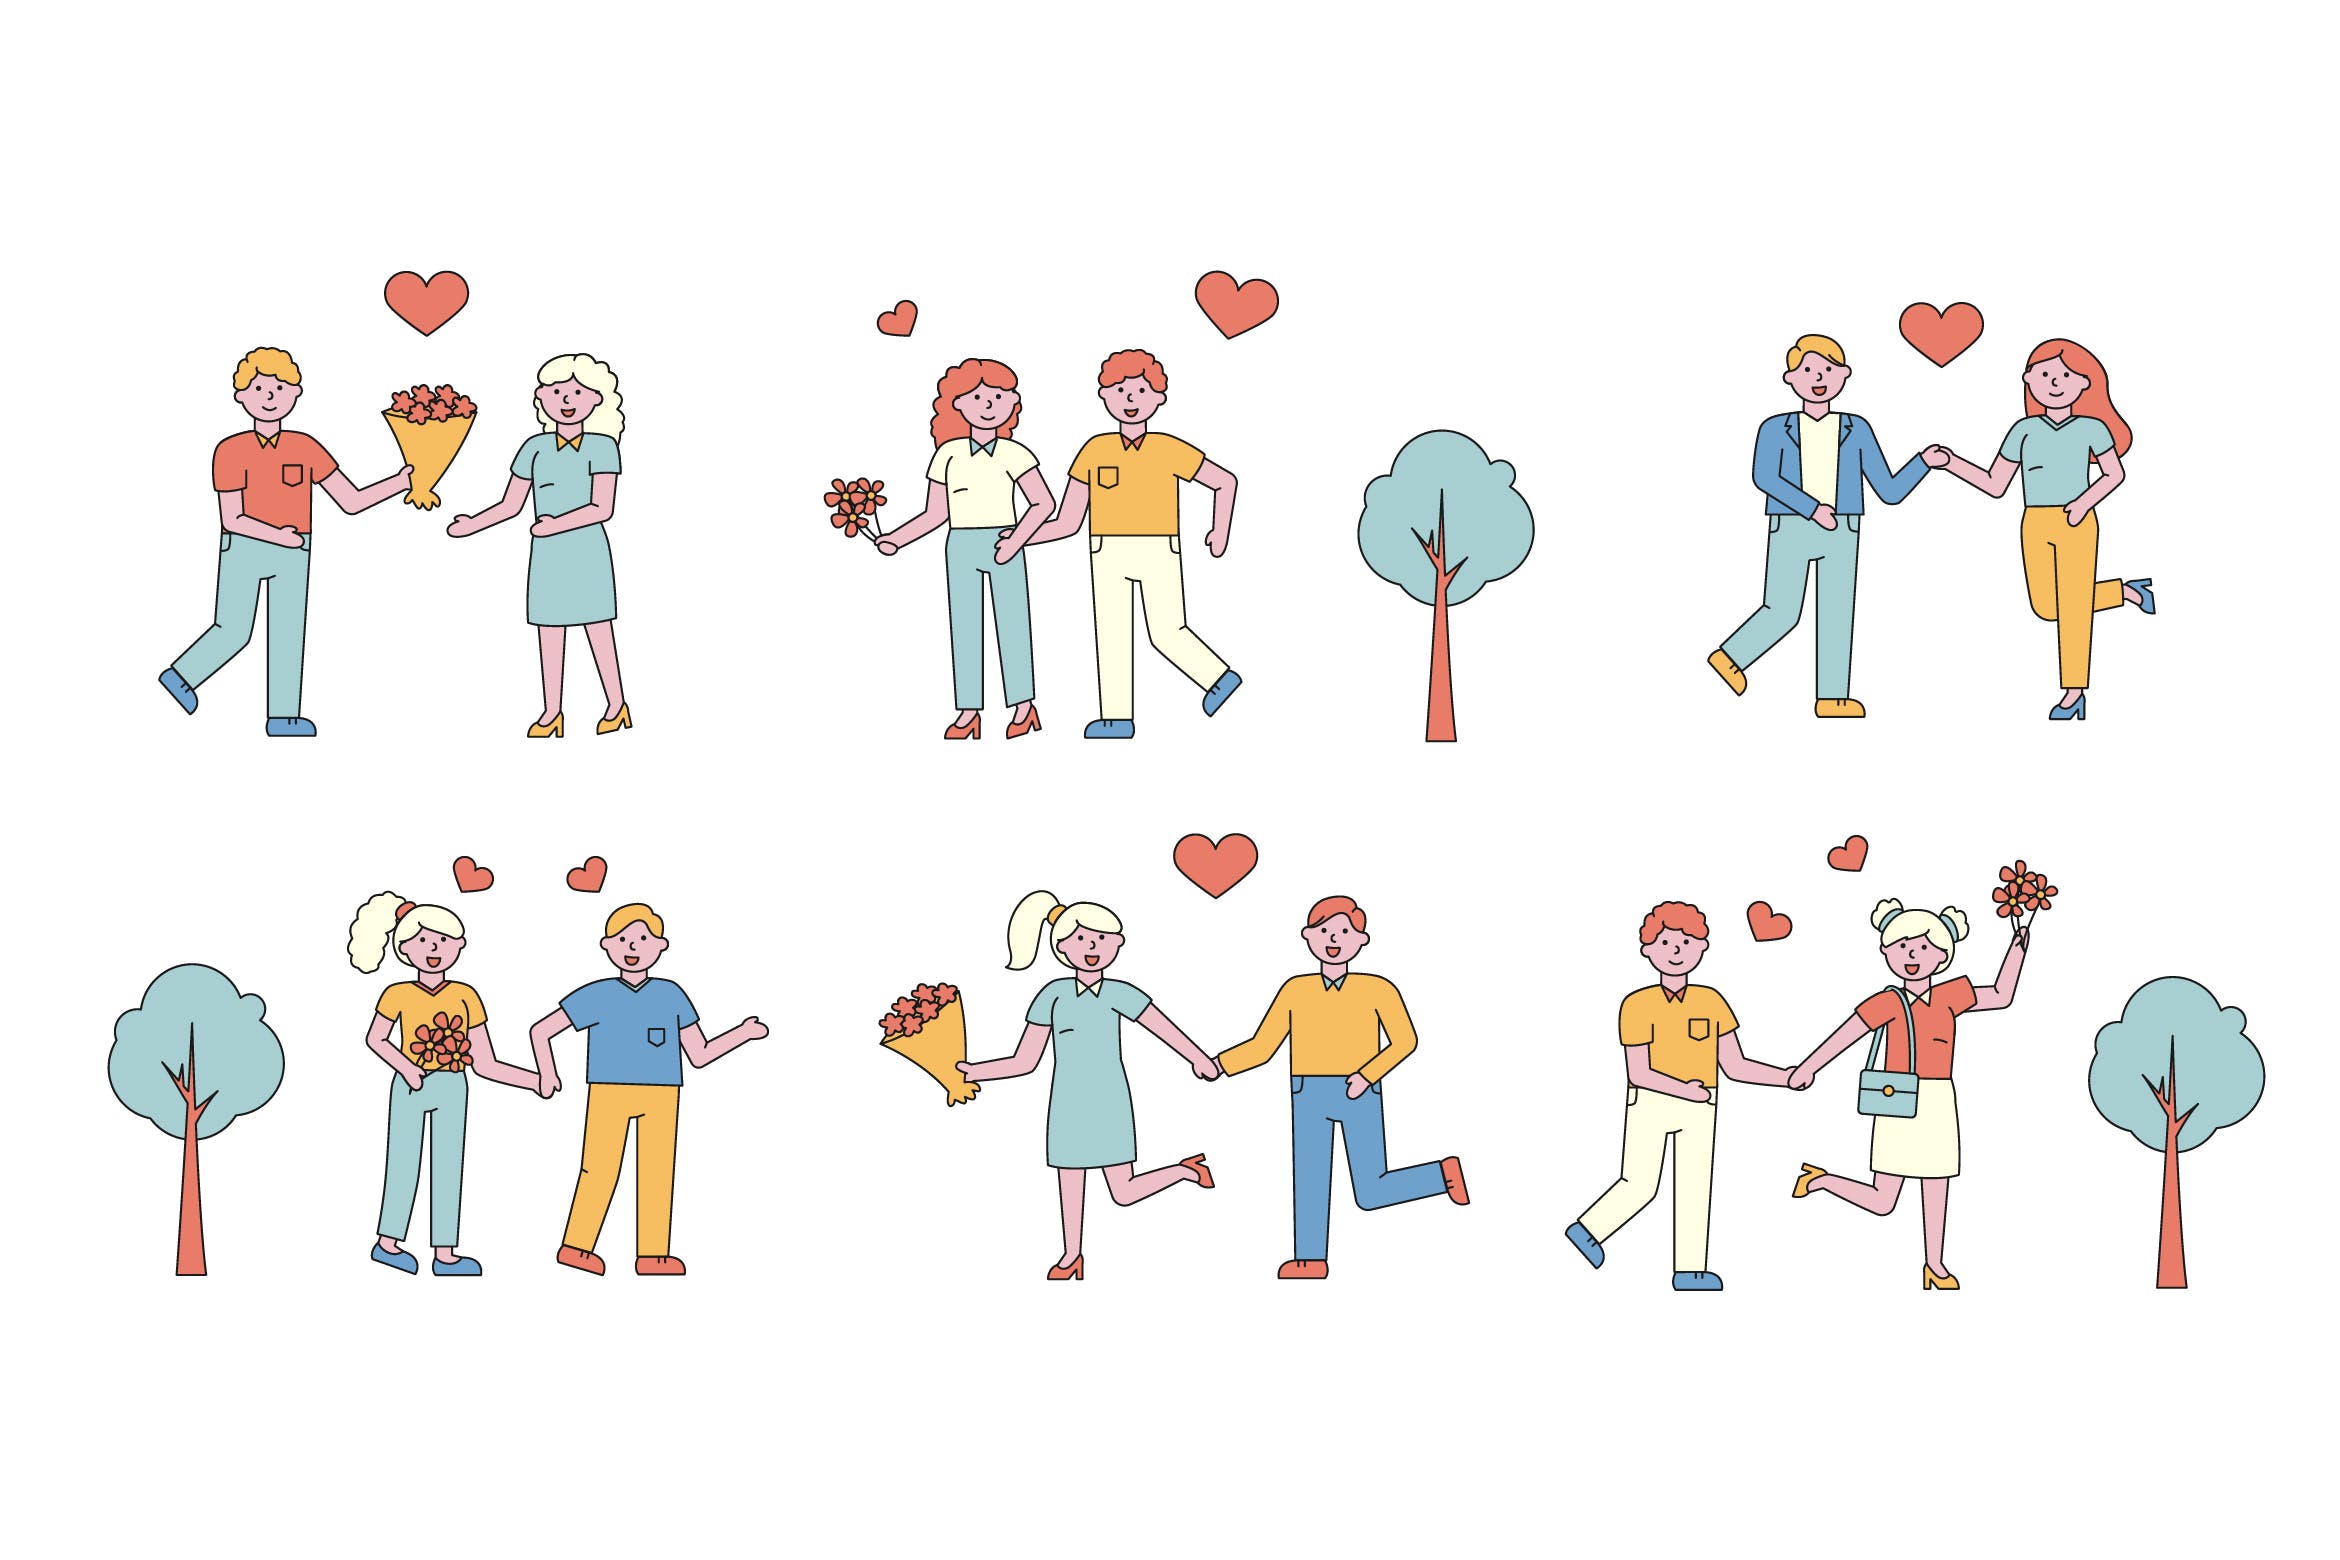 情侣爱情主题人物形象线条艺术矢量插画素材库精选素材 Romantic Lineart People Character Collection插图